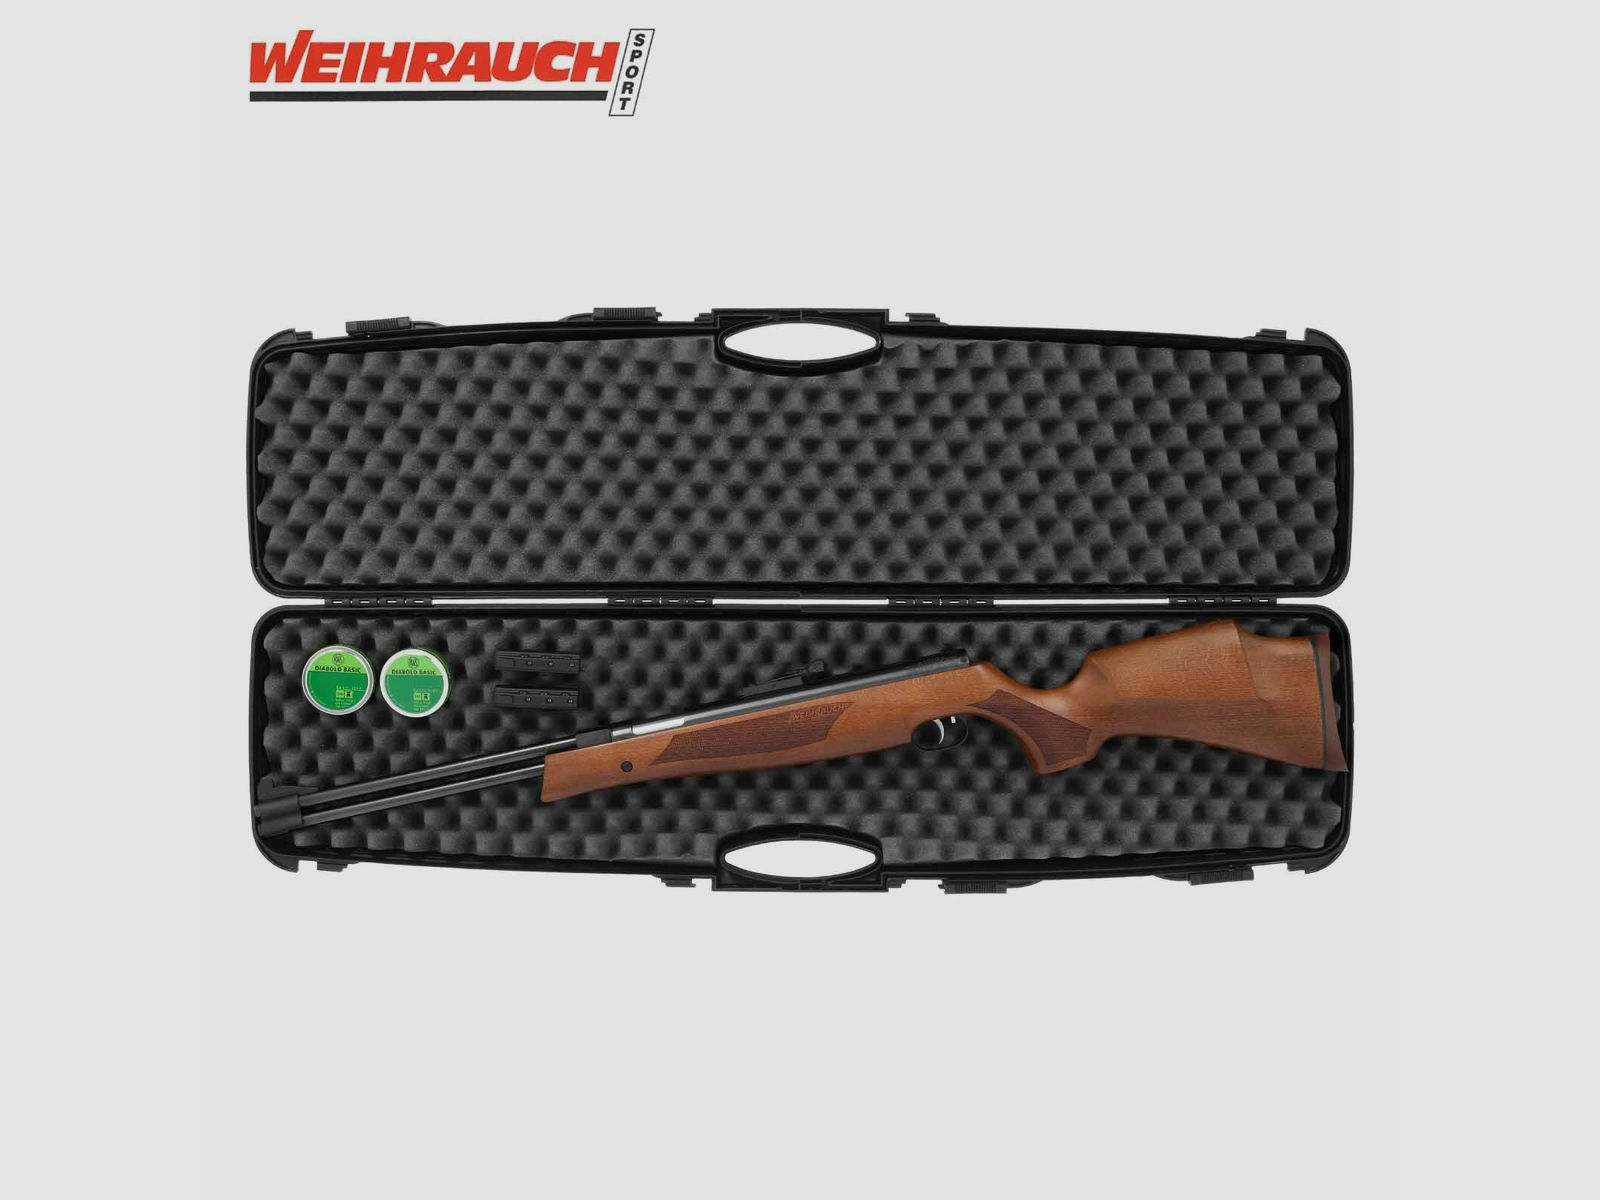 SET Luftgewehr Weihrauch HW 77 K 4,5 mm (P18) + Koffer inklusive 2 Zahlenschlösser + 1000 Diabolos